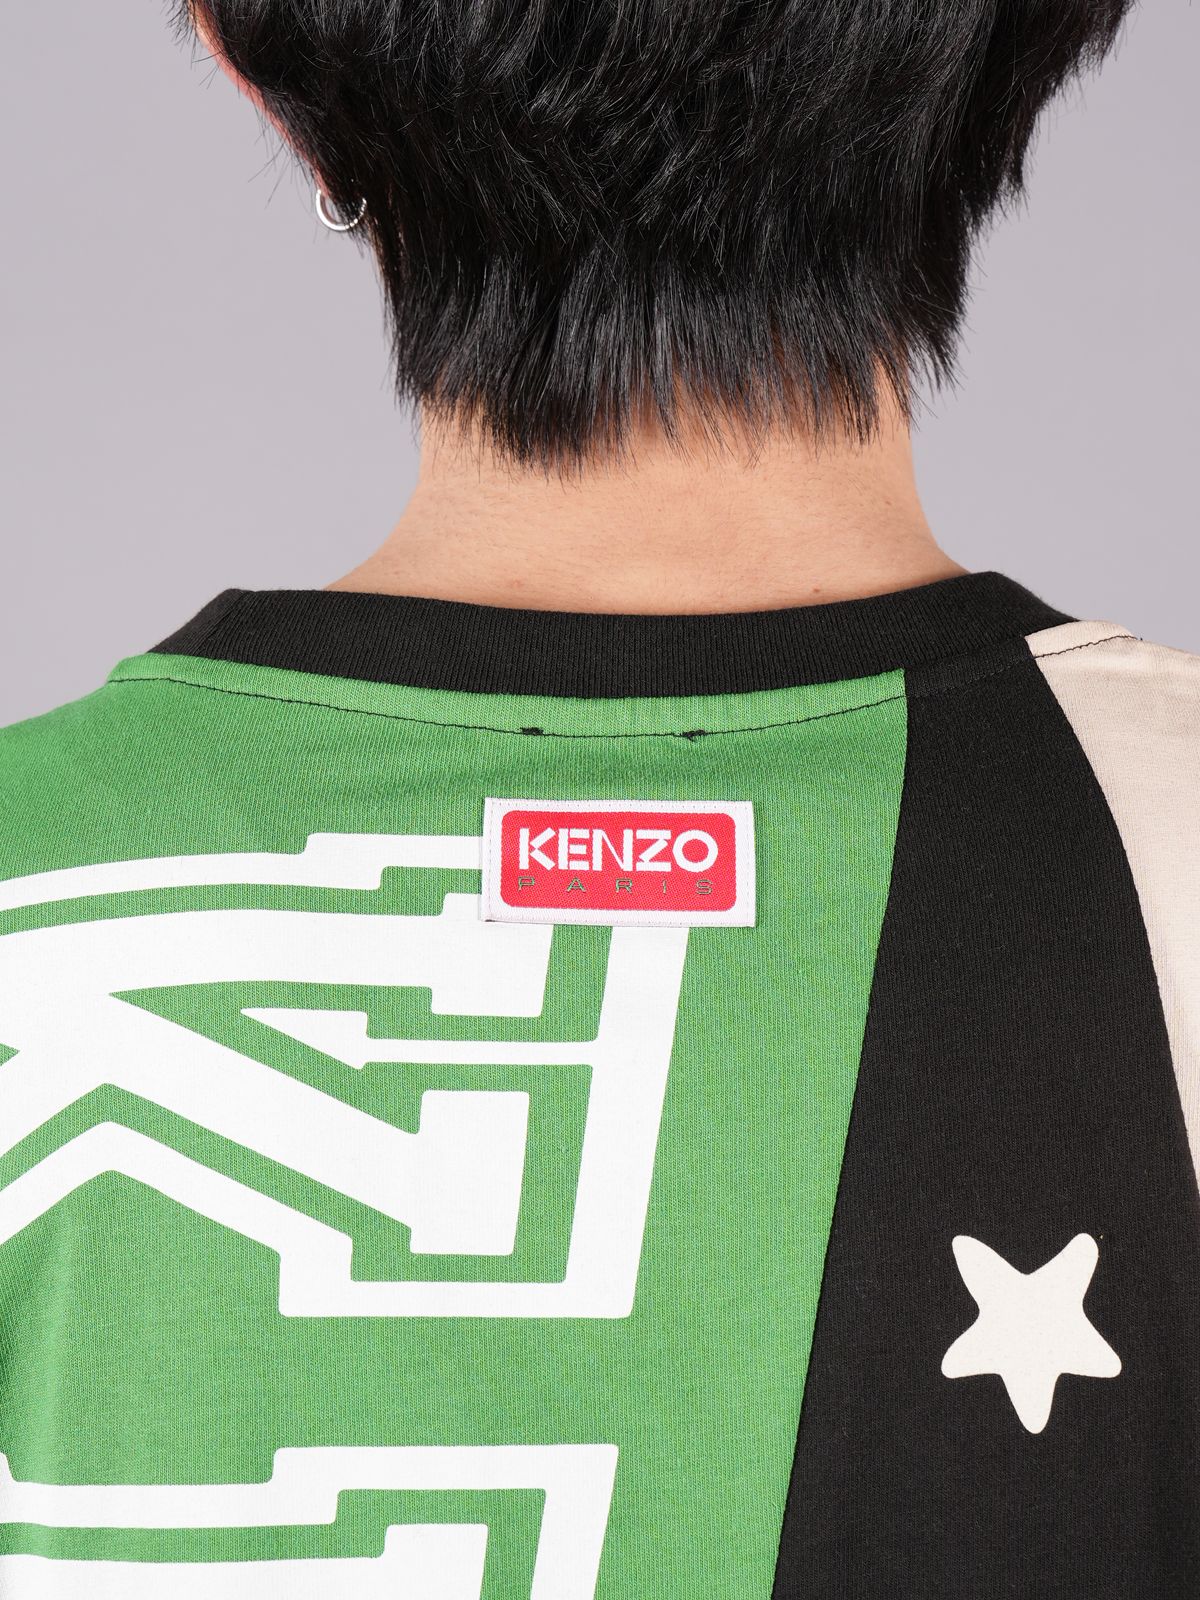 KENZO - 【ラスト1点】 KENZO FLAGS OVERSIZE T-SHIRT / ケンゾー